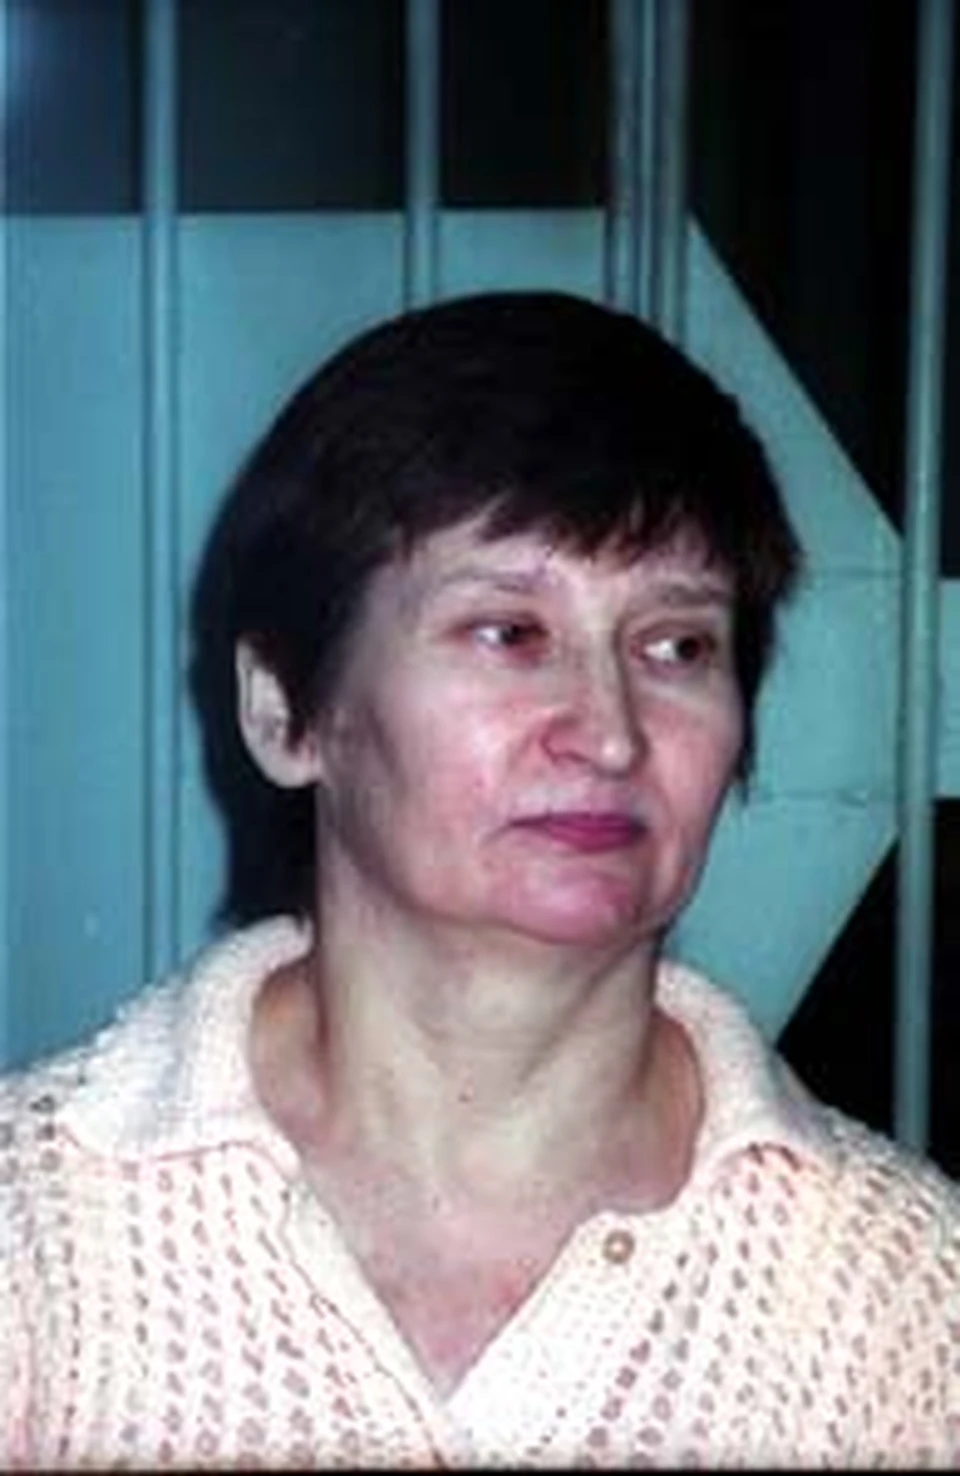 Убийца таксистов Людмила Жукова. Все считали ее очень приятной женщиной.